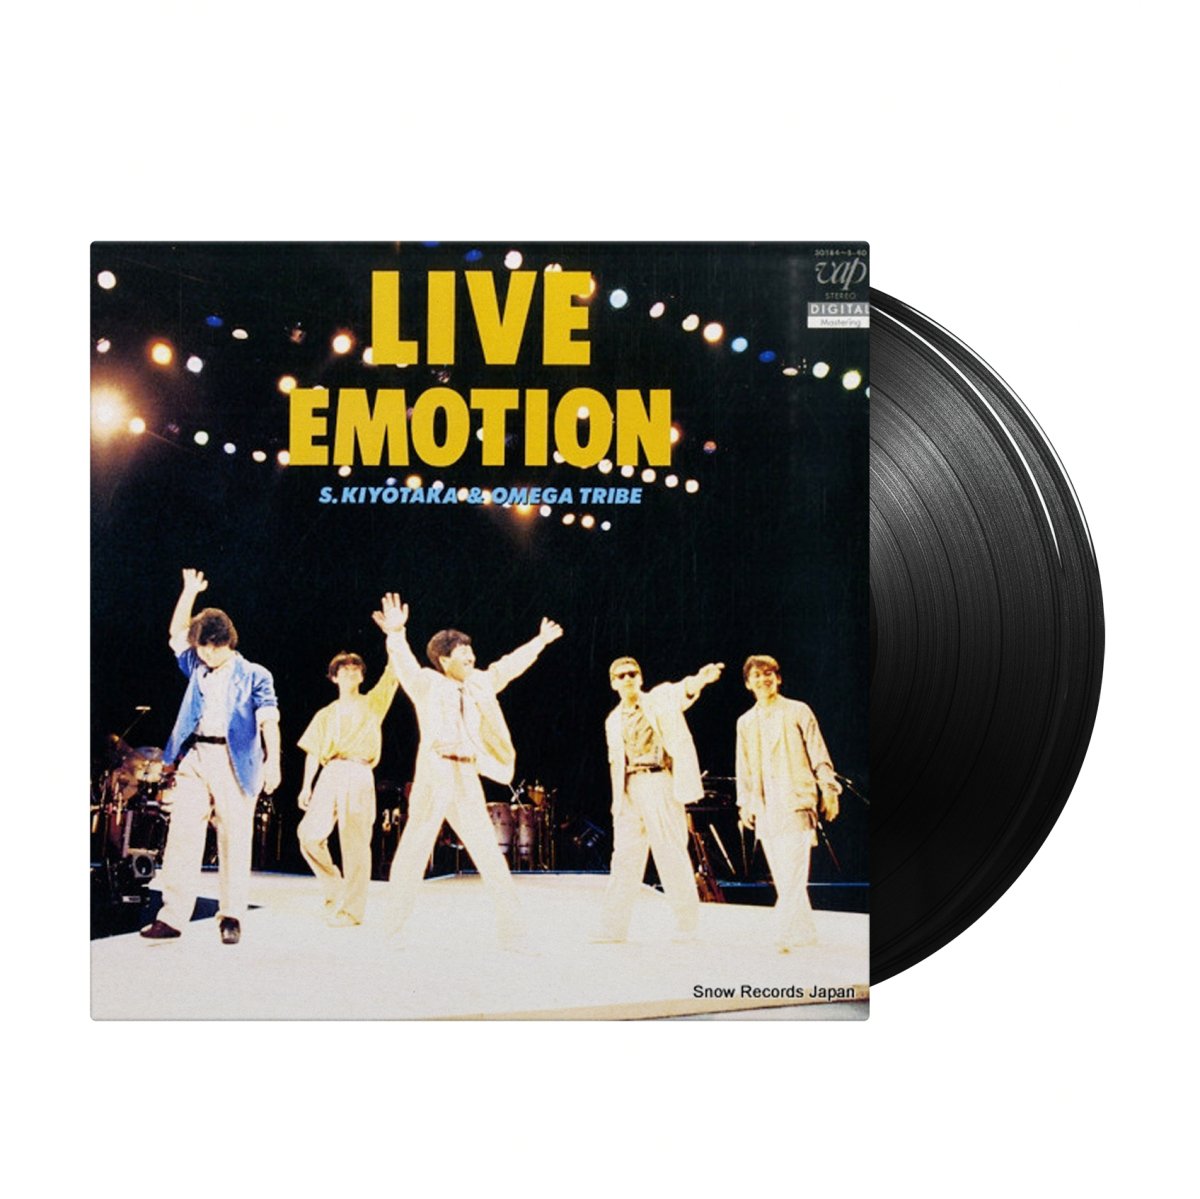 S. Kiyotaka & Omega Tribe - Live Emotion (Japan Import) - Inner Ocean Records